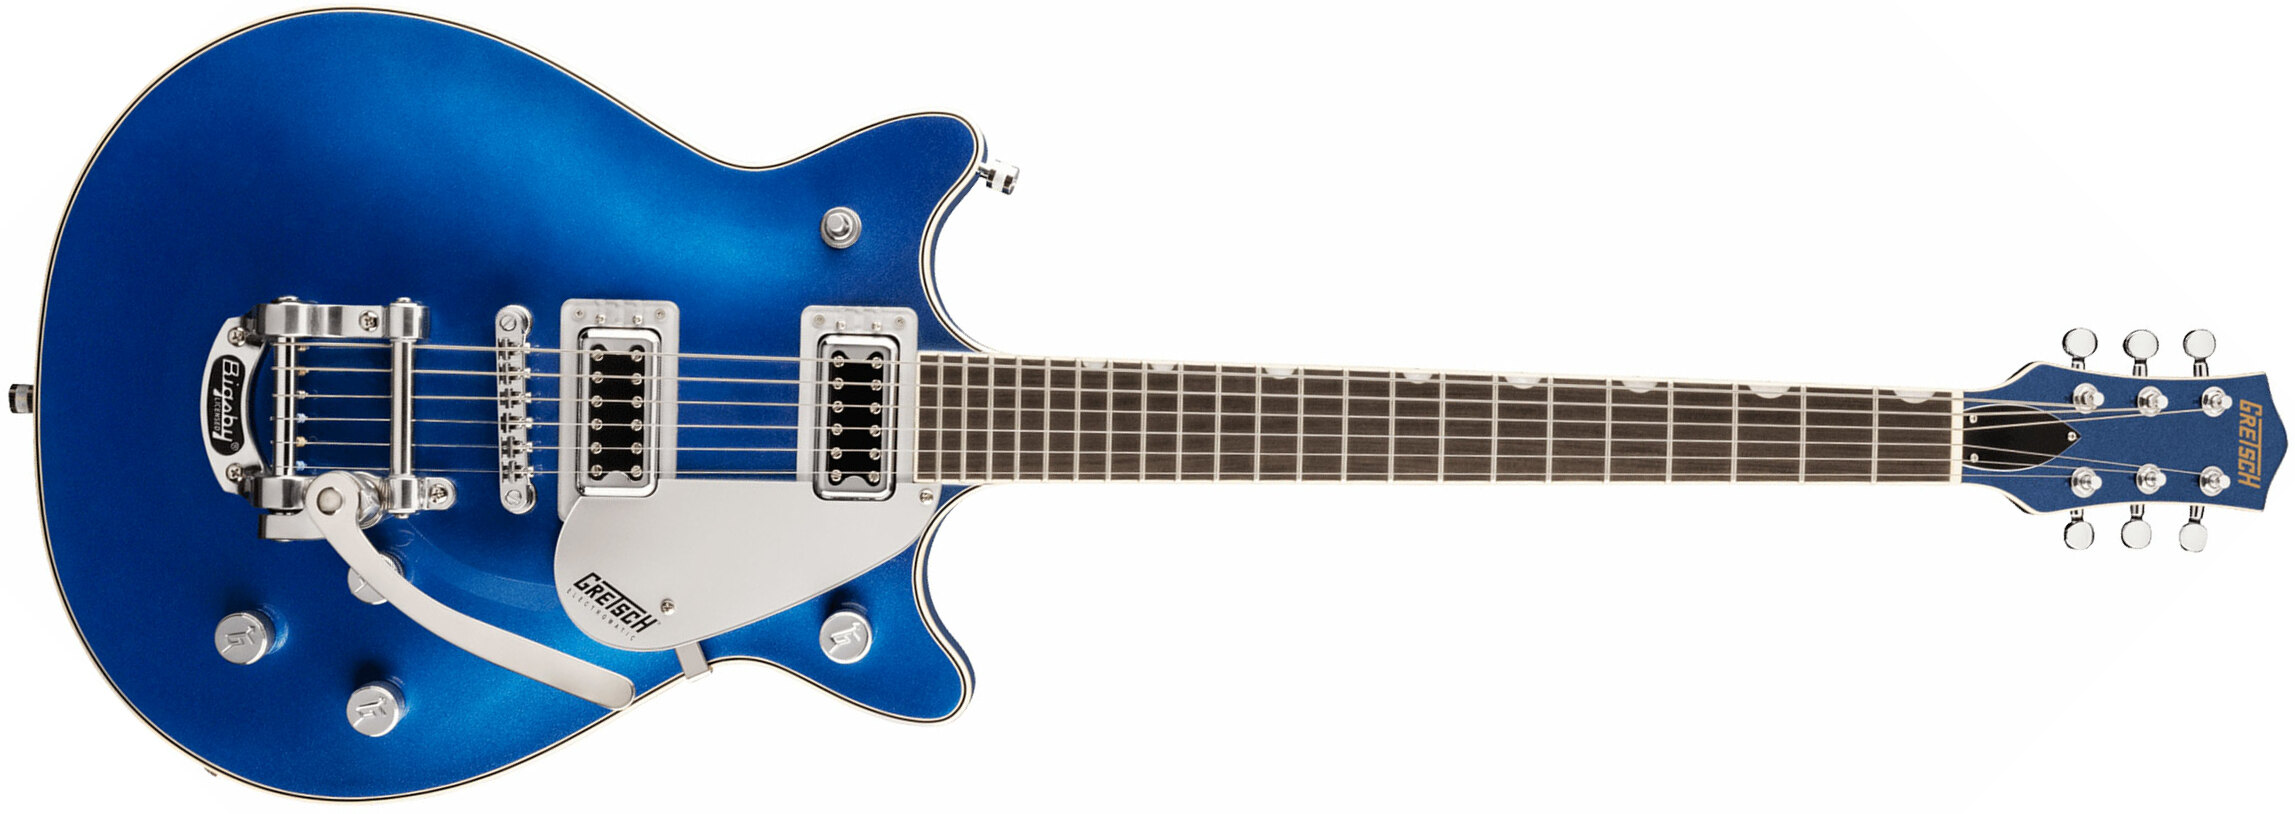 Gretsch G5232t Electromatic Double Jet Ft 2h Bigsby Lau - Fairlane Blue - Guitarra eléctrica de doble corte. - Main picture